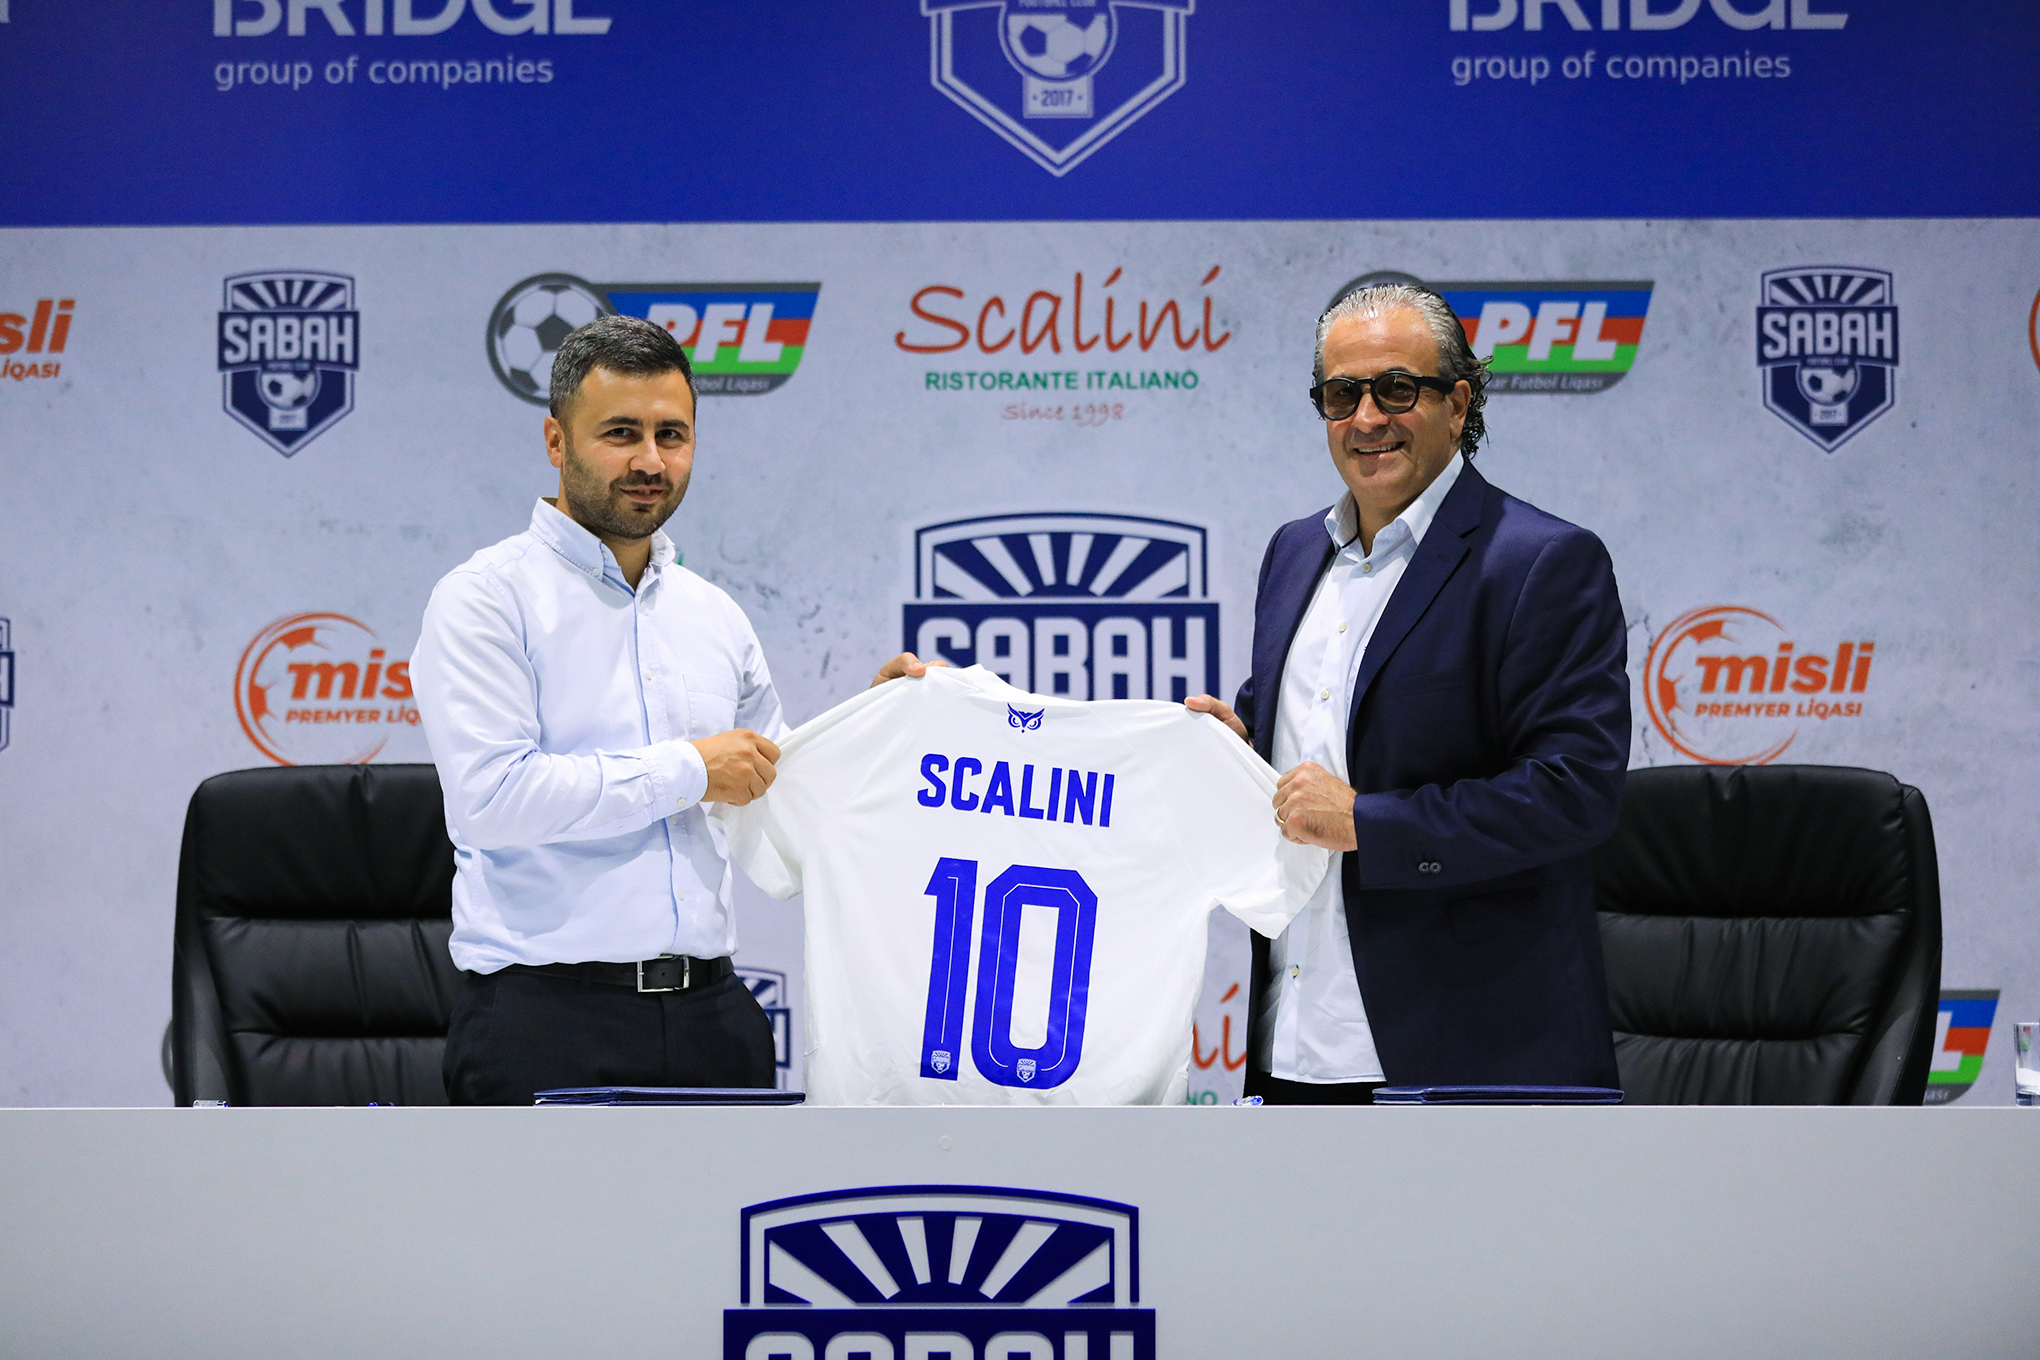 “Sabah” yeni sponsorla müqavilə imzaladı - İtalyanlarla